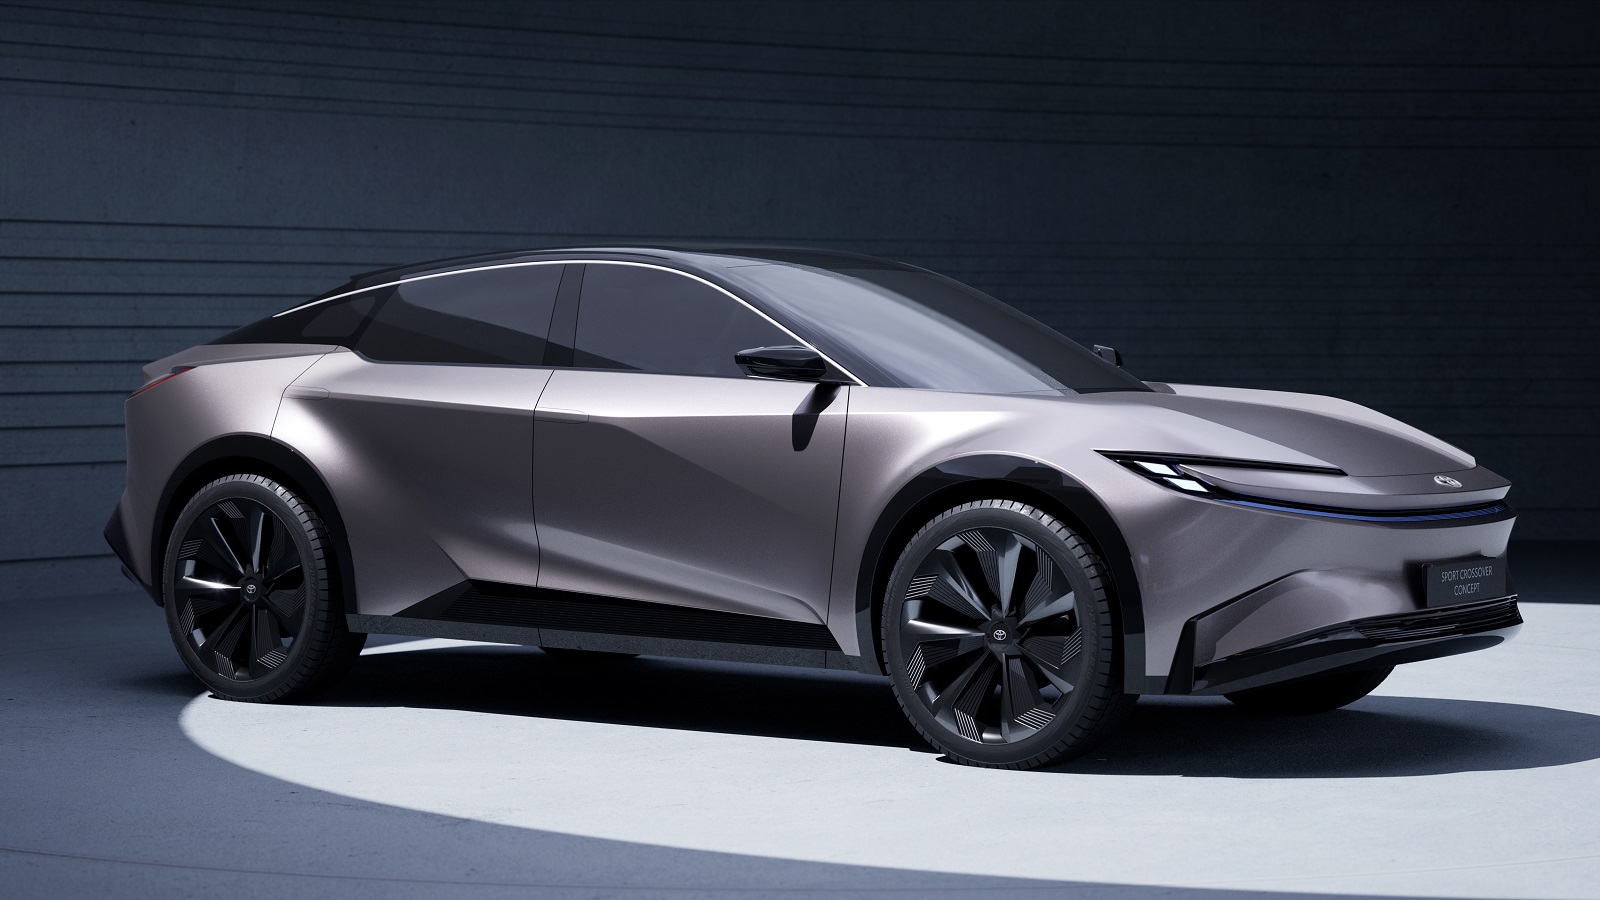 Toyota Sport Crossover Concept najavljuje najljepšeg električnog Japanca do sad, stiže 2025.! 26